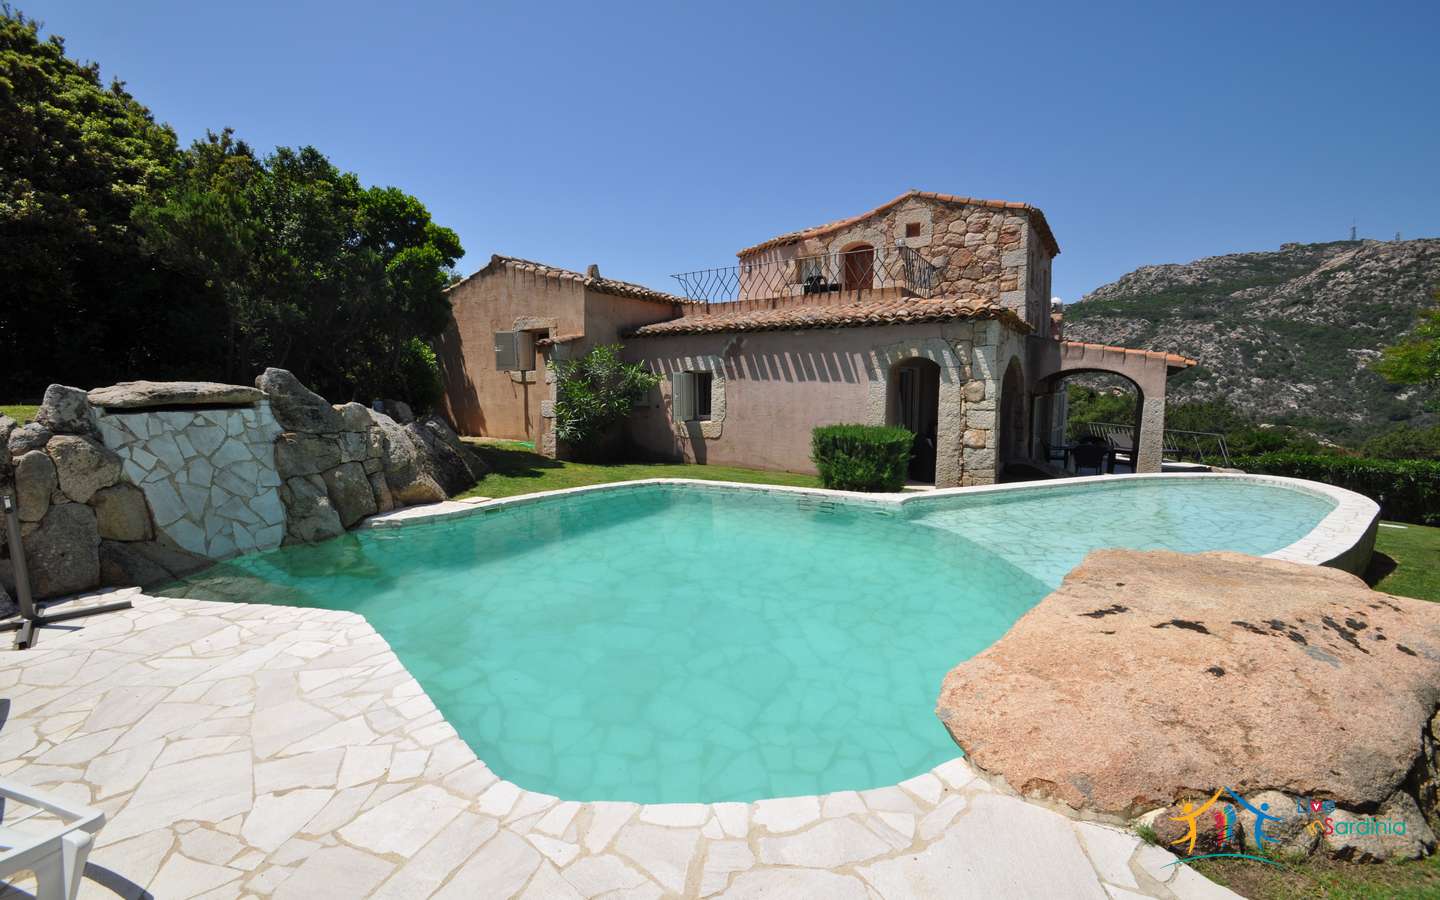 5 Bed Sea View Villa For Sale Porto Cervo Sardinia